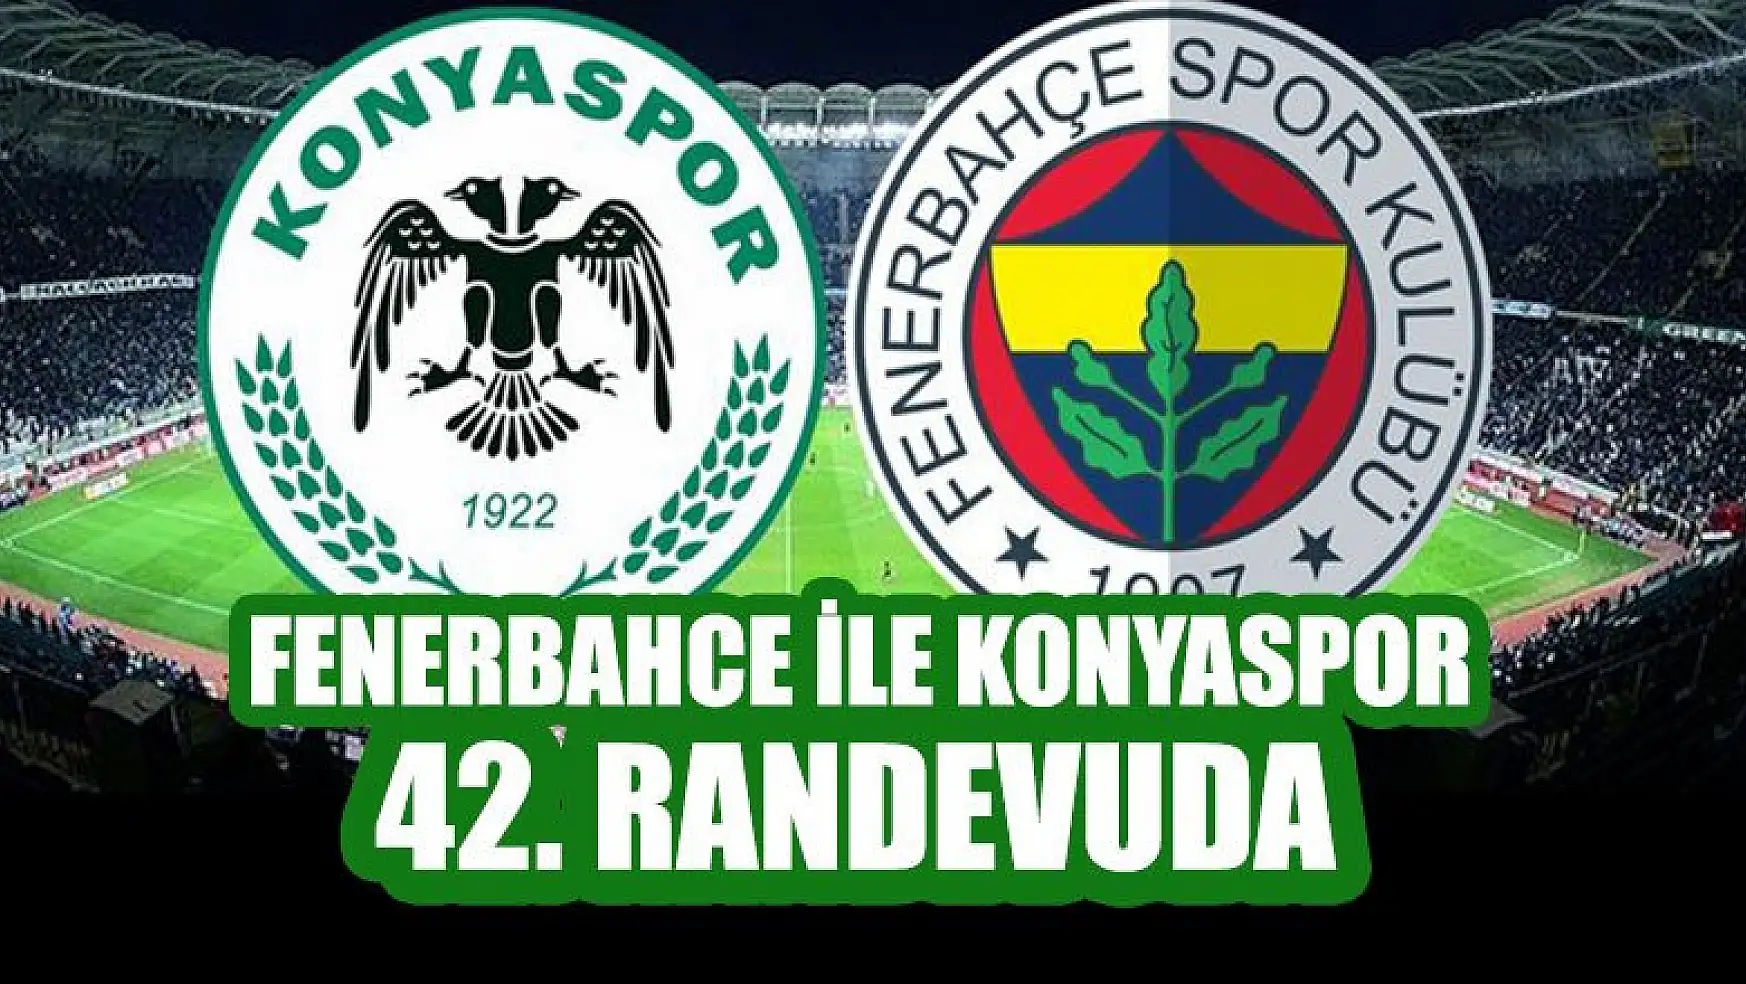 Fenerbahçe ile Konyaspor, Süper Lig'de 42. randevuda